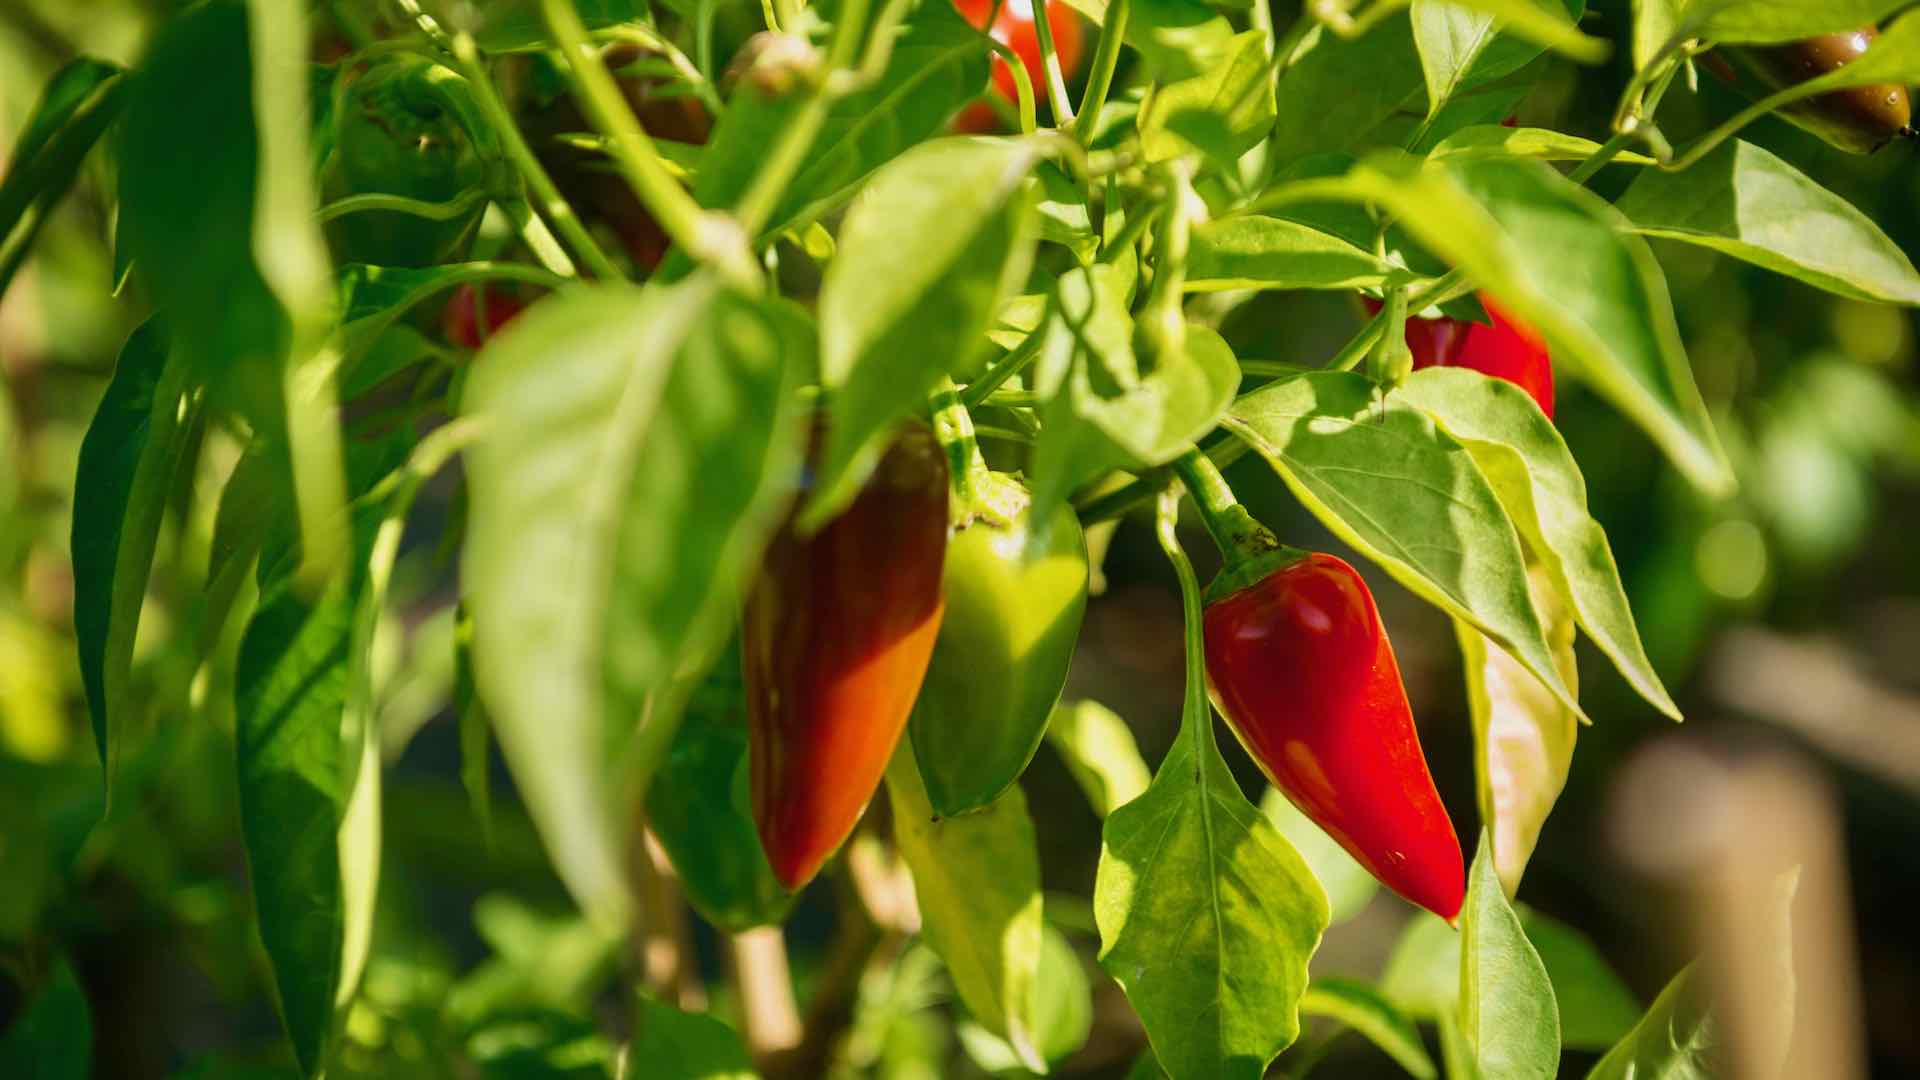 Bild zeigt rote Chilischoten an einer Pflanze hängend